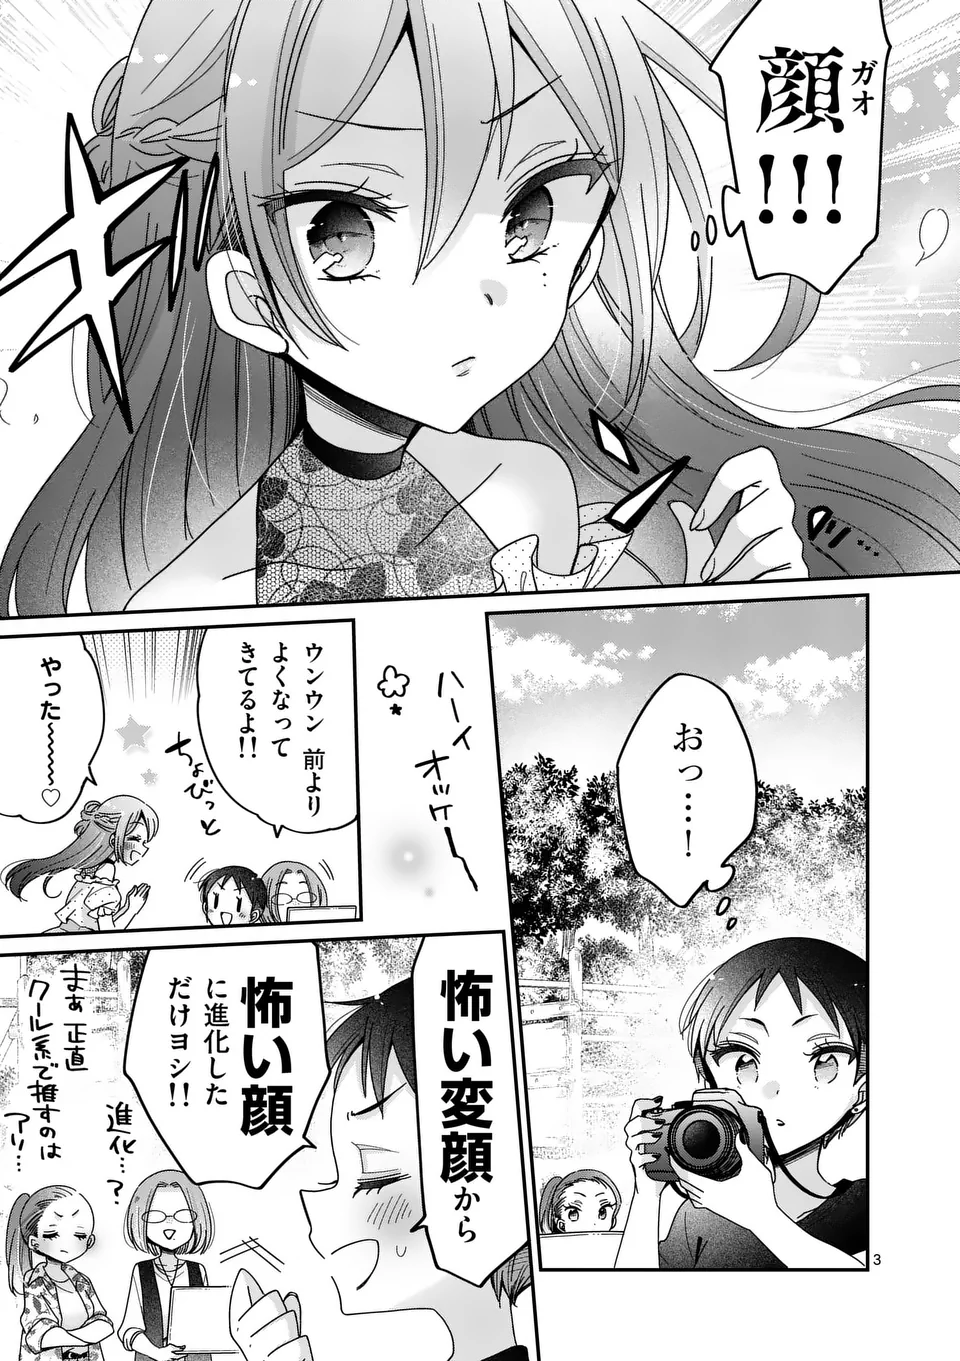 Kimi Toku!! – Kimi ni mo Tokusatsu Eiga ga Toreru!! - Chapter 27 - Page 3